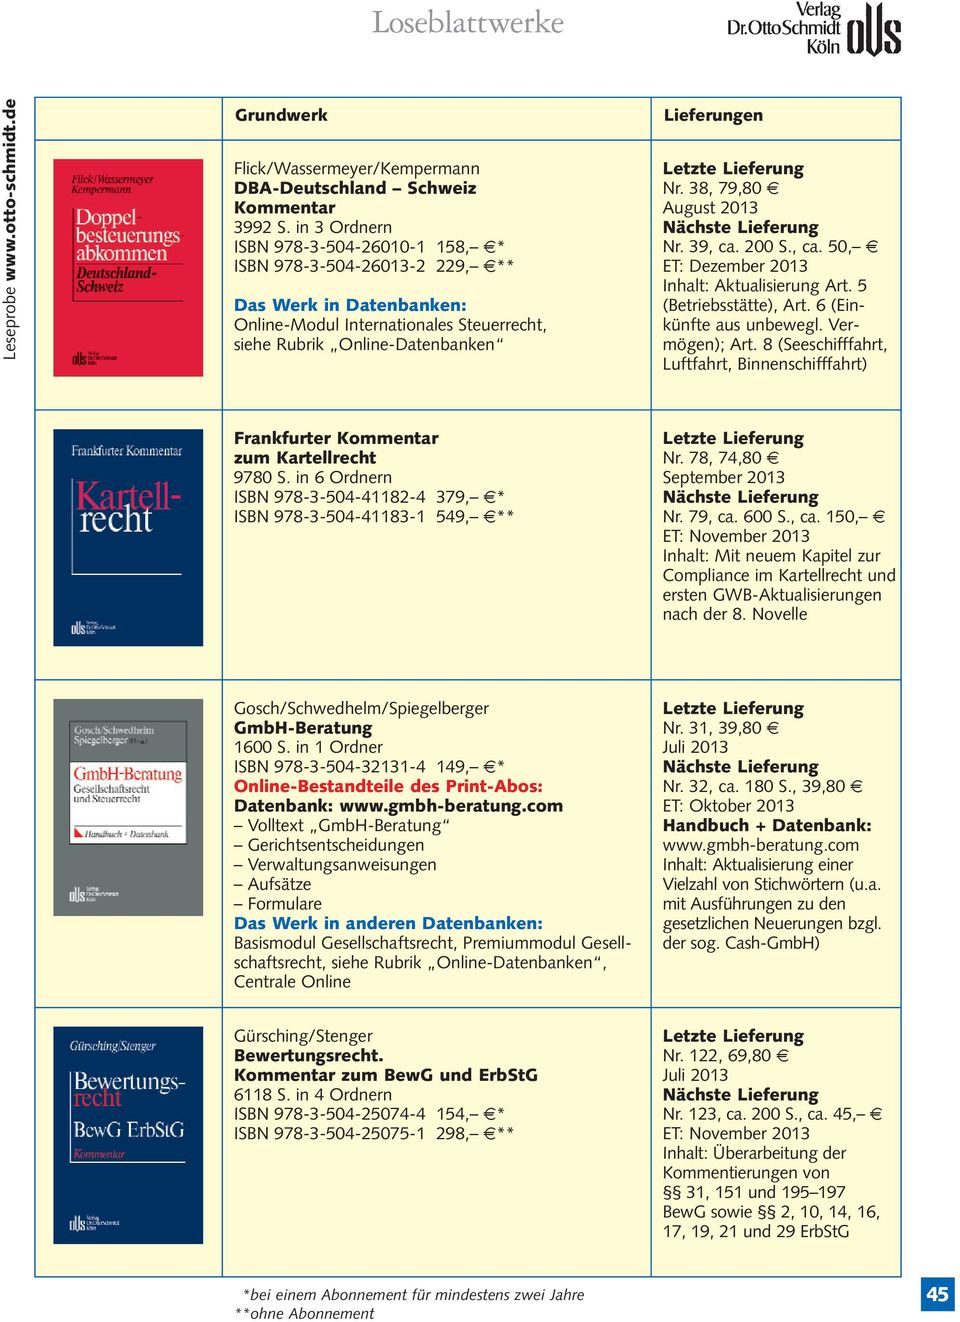 8 (Seeschifffahrt, Luftfahrt, Binnenschifffahrt) Frankfurter zum Kartellrecht 9780 S. in 6 Ordnern ISBN 978-3-504-41182-4 379, 7* ISBN 978-3-504-41183-1 549, 7** Nr. 78, 74,80 7 Nr. 79, ca. 600 S.